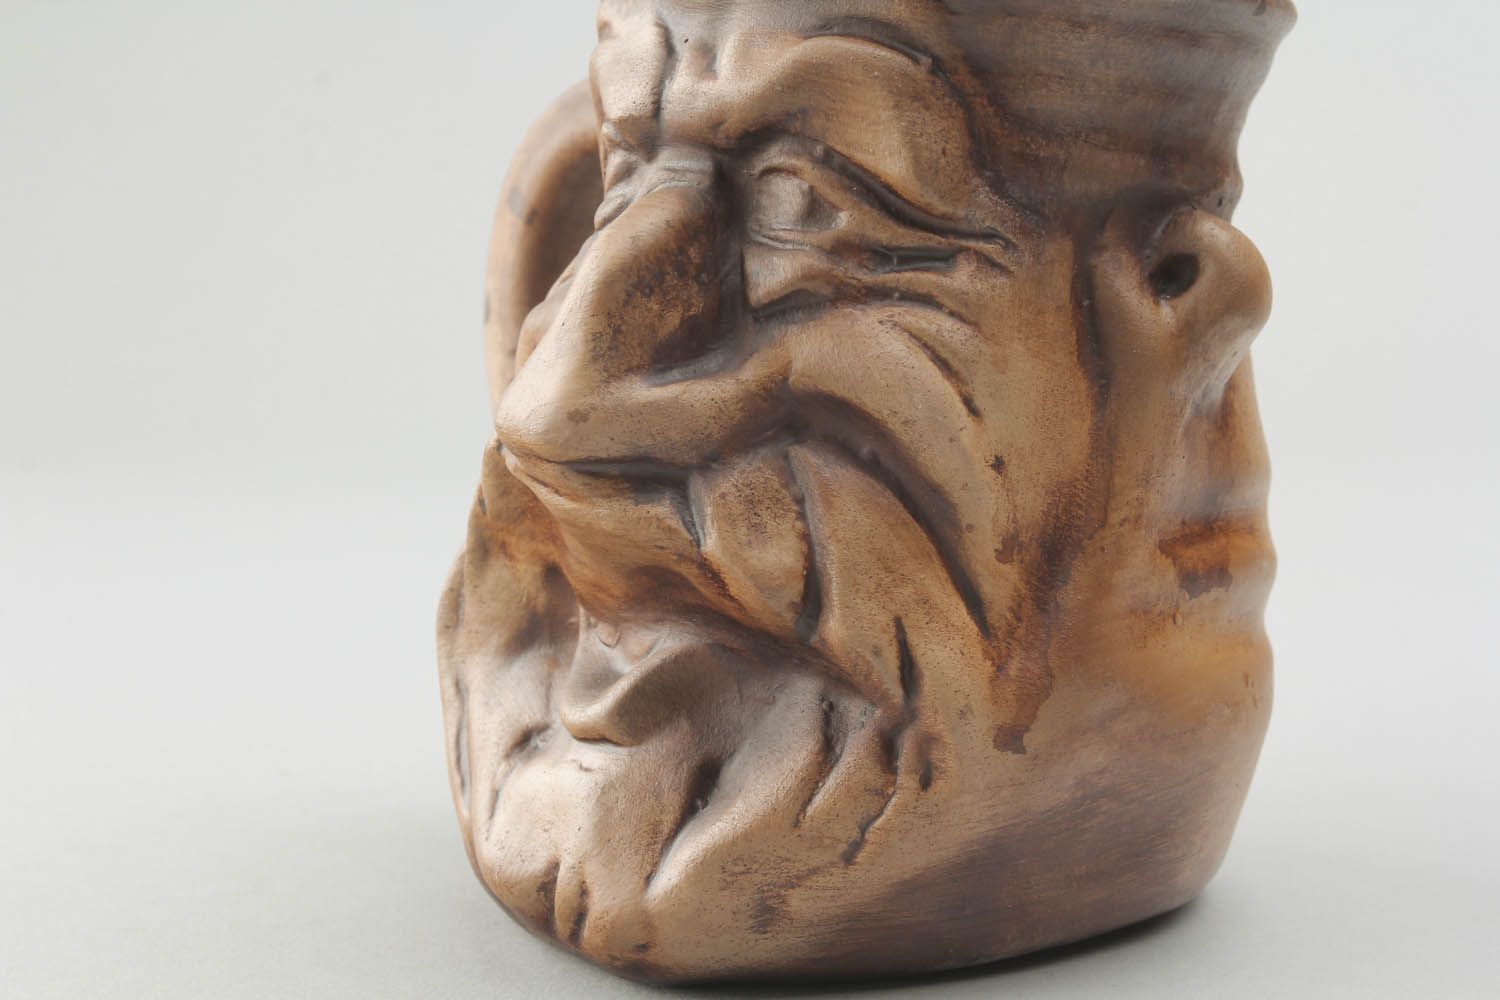 Large 10 oz ceramic decorative drinking mug in old man face shape photo 3